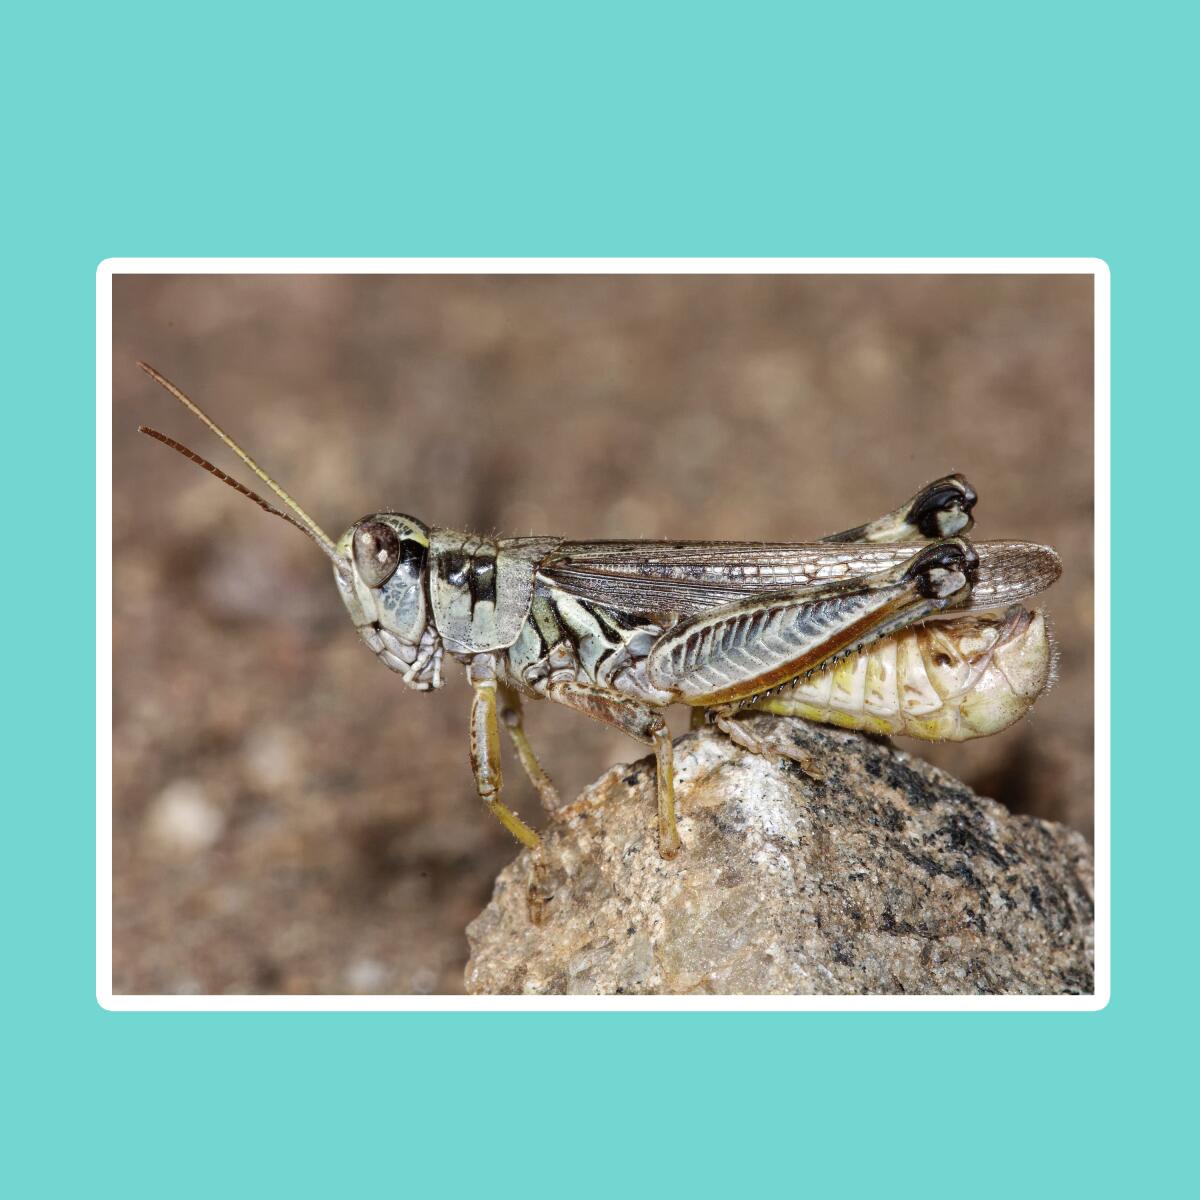 A male migratory grasshopper.